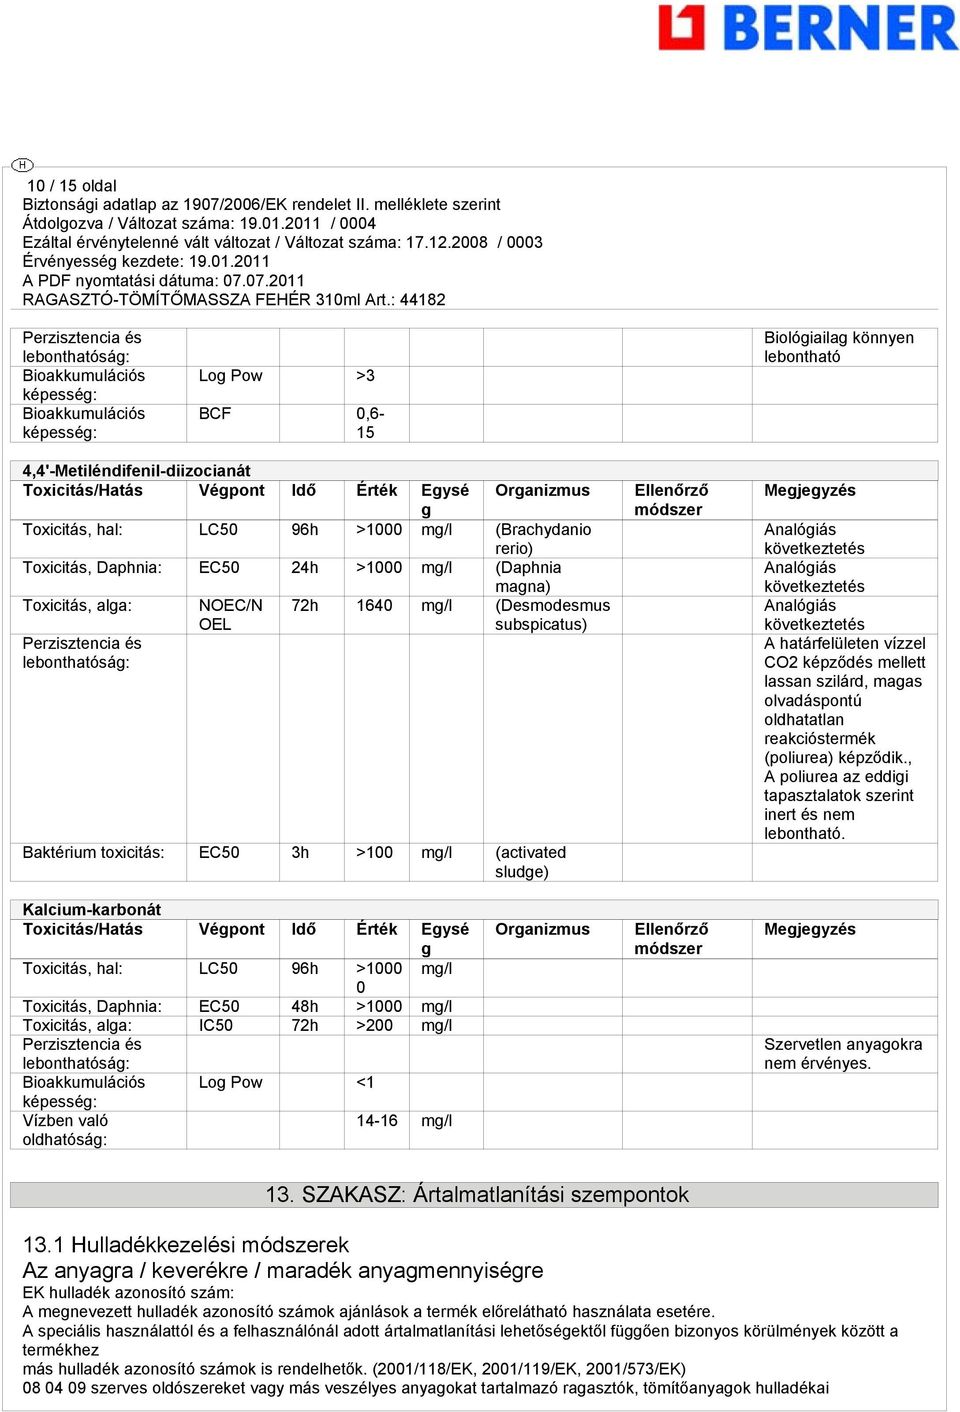 OEL magna) 72h 1640 mg/l (Desmodesmus subspicatus) Baktérium toxicitás: EC50 3h >100 mg/l (activated sludge) Ellenőrző módszer Megjegyzés Analógiás következtetés Analógiás következtetés Analógiás